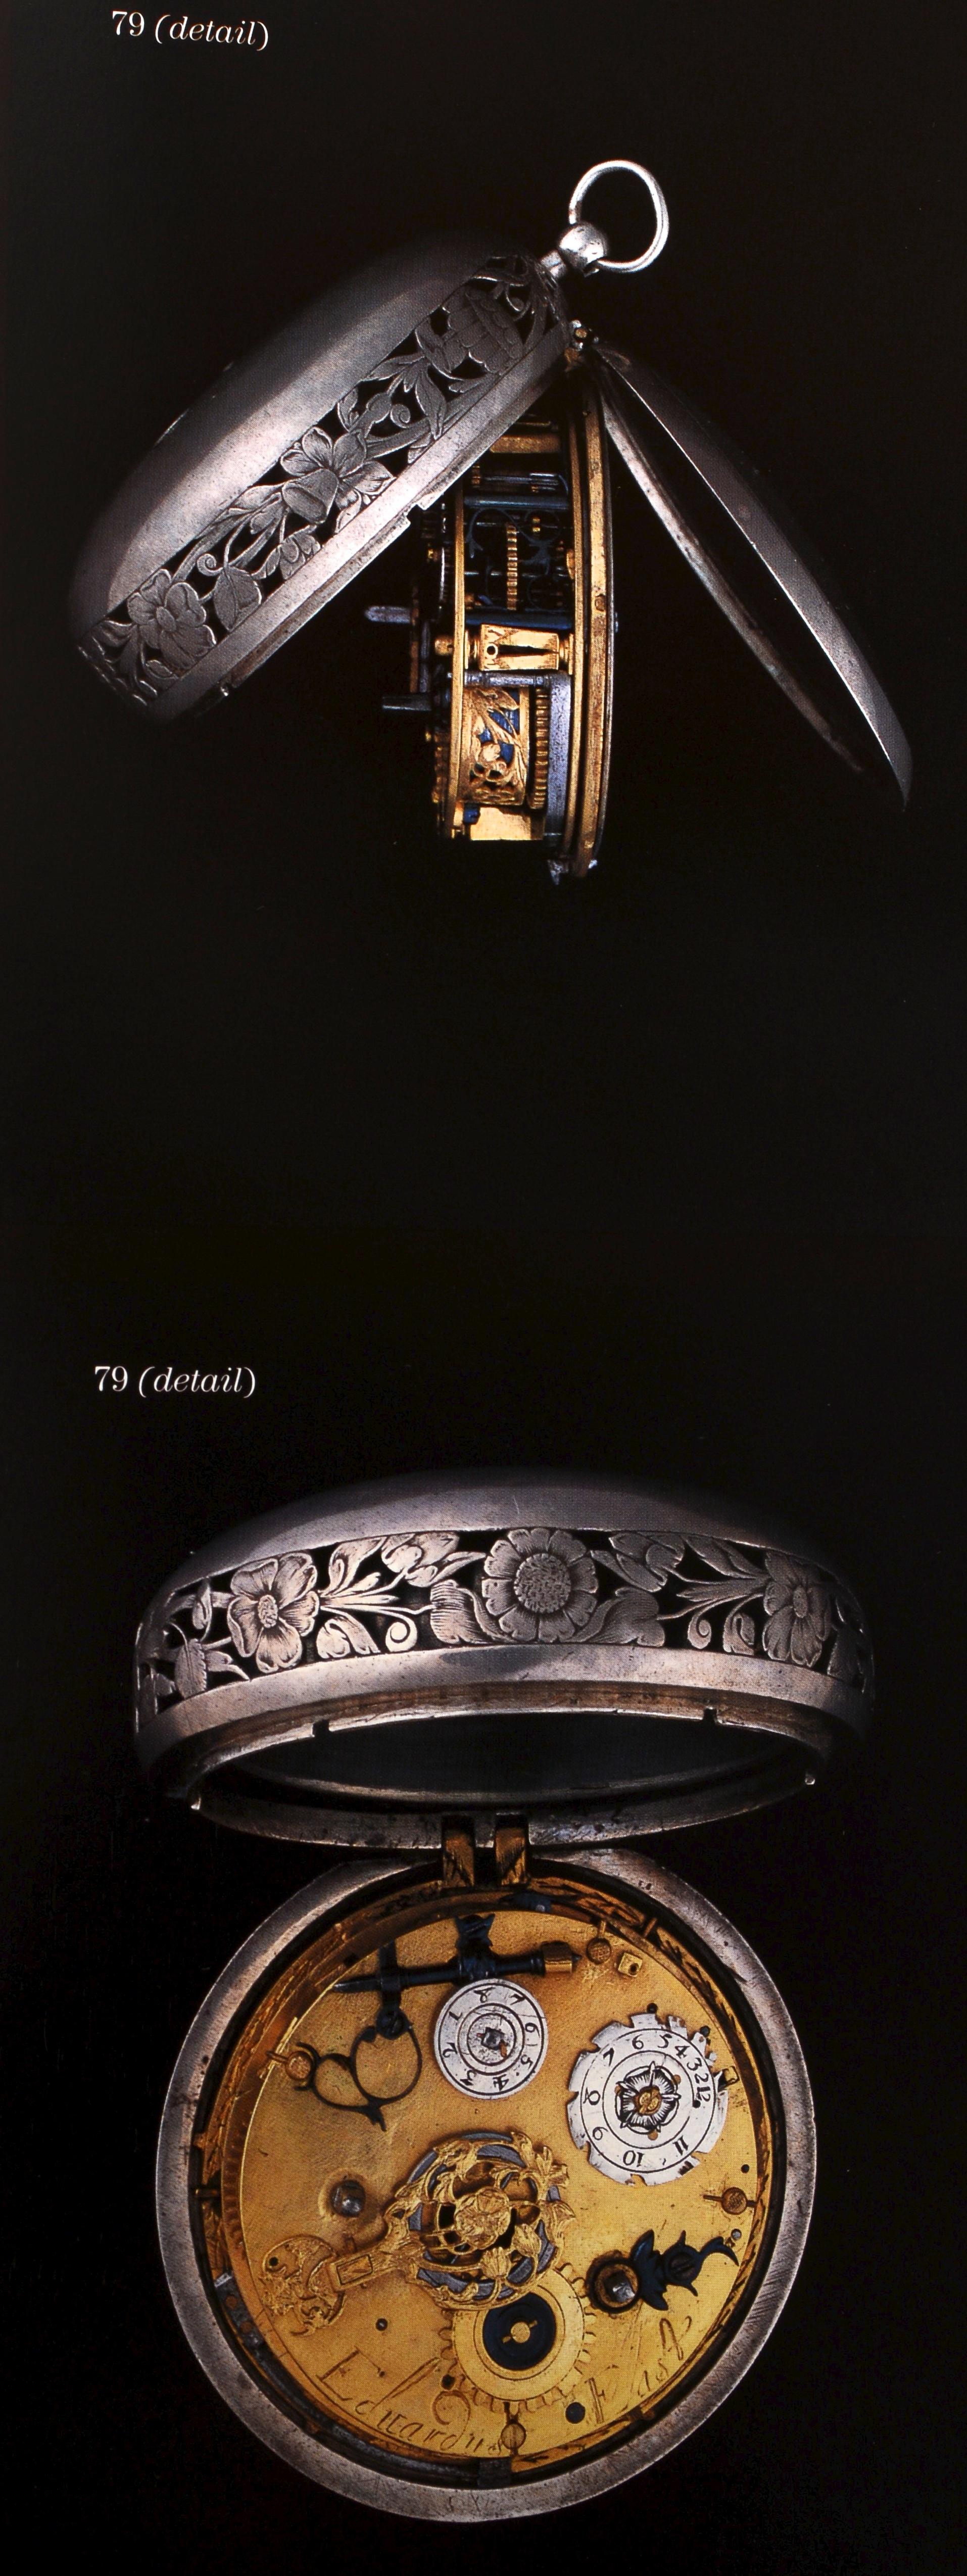 Collection d'horloges de justice Warren Shepro : Sotheby's NY, 26 avril 2001, 1ère édition en vente 12